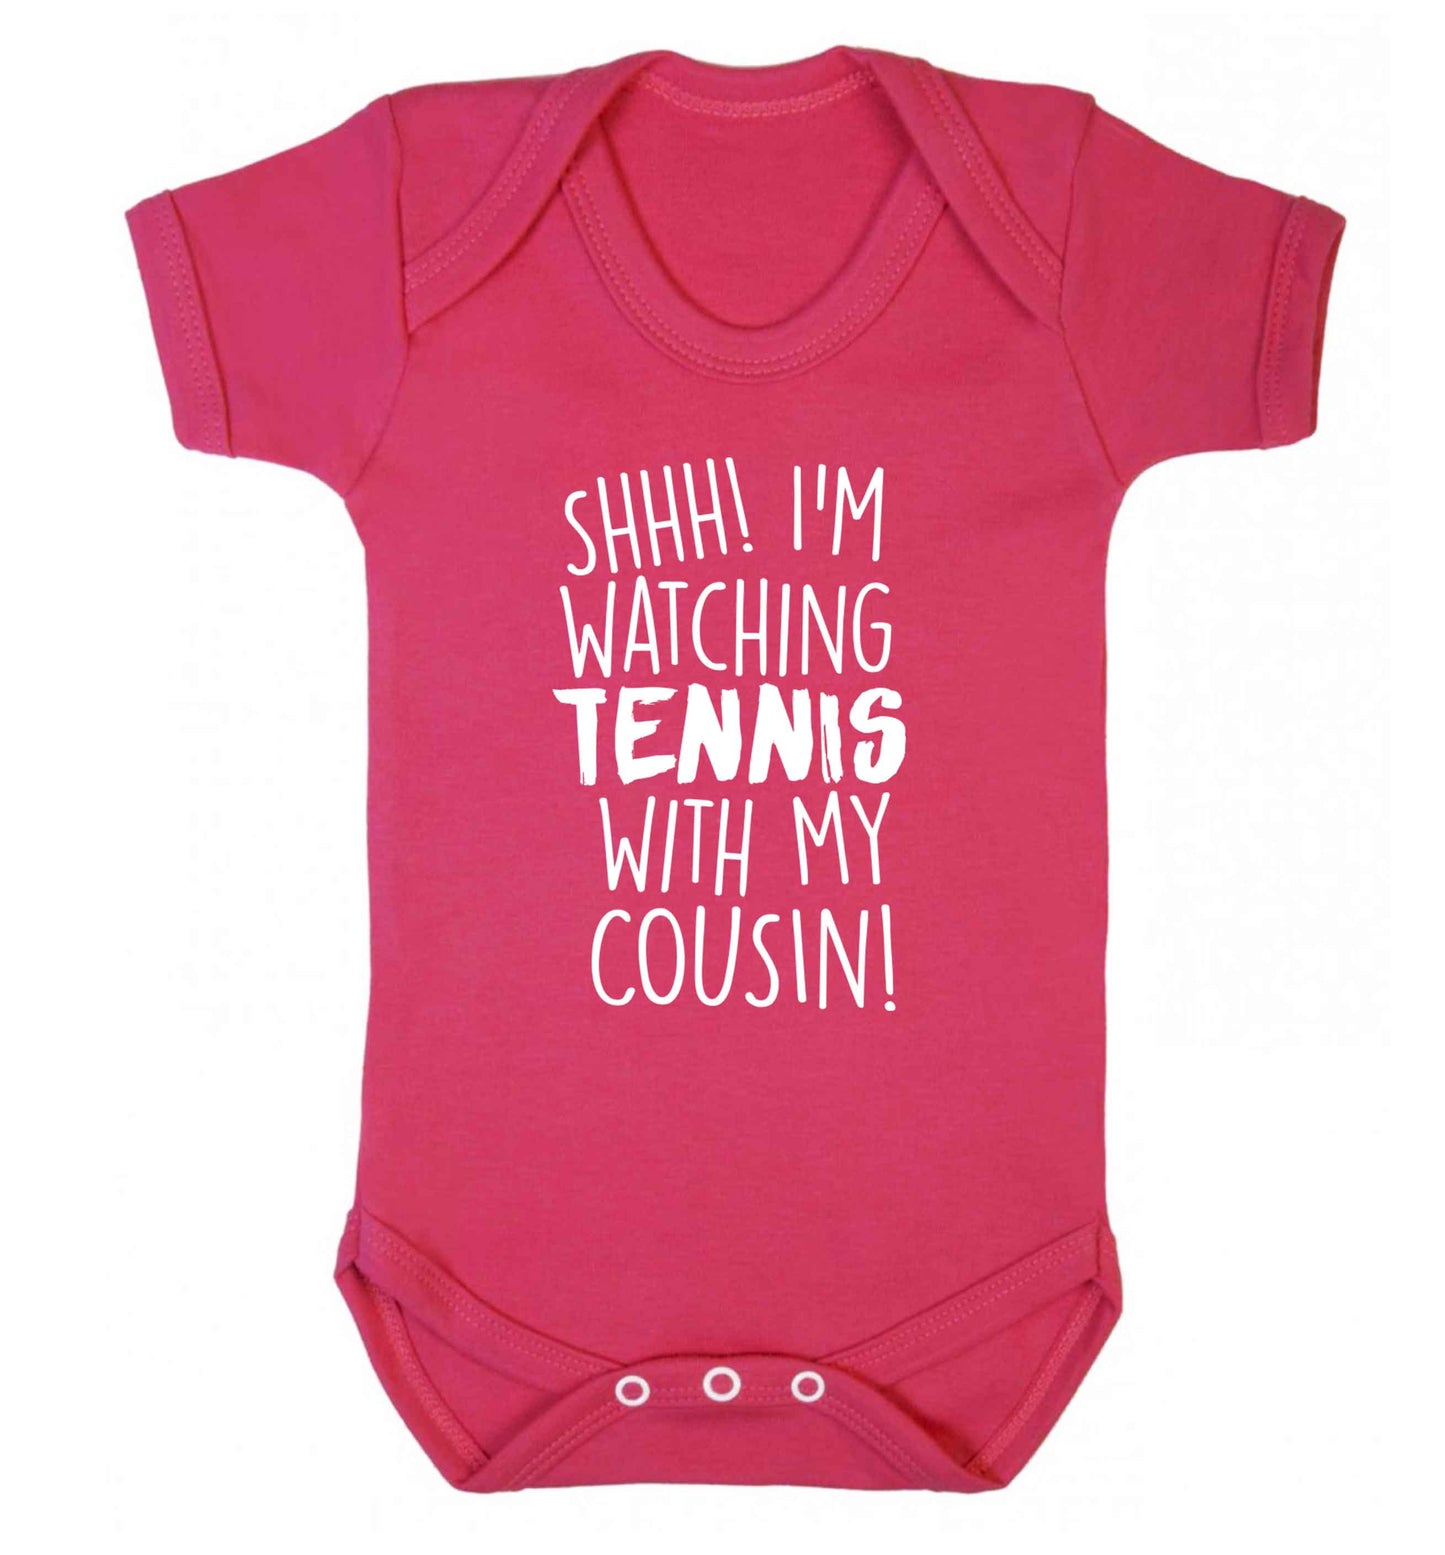 Shh! I'm watching tennis with my cousin! Baby Vest dark pink 18-24 months